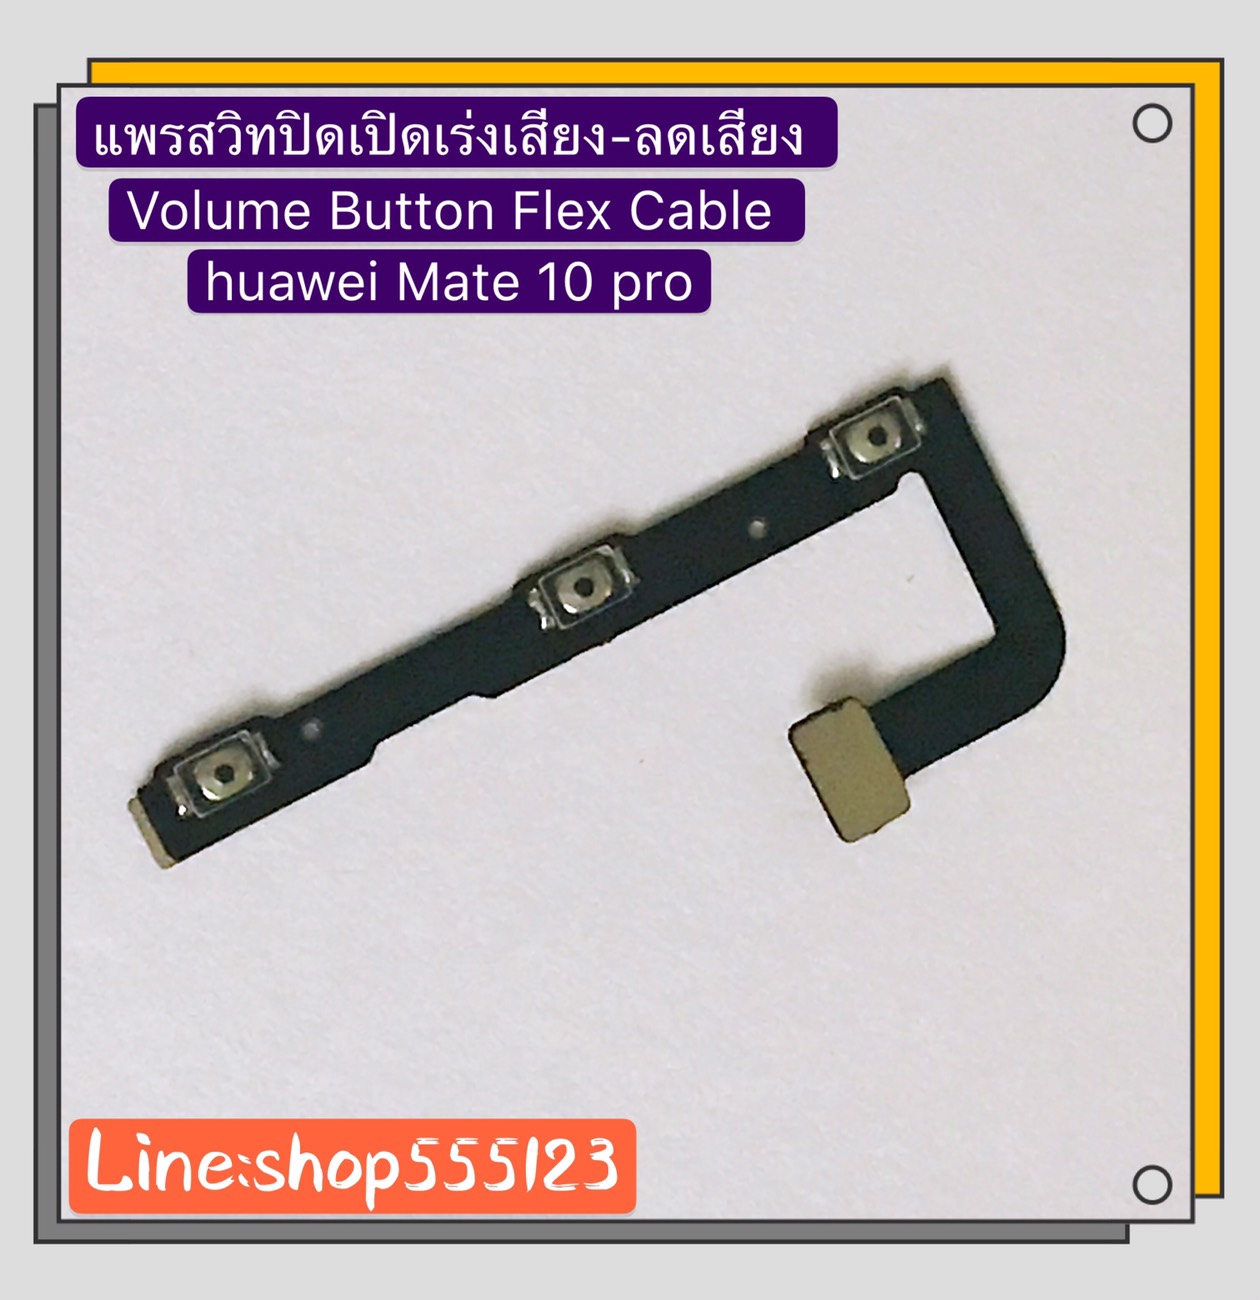 แพรสวิท ปิด-เปิด ( PCB on-off ) Huawei Mate 20 Pro / Mate 20 / Mate 10 Pro สี สีดำ สี สีดำรูปแบบรุ่นที่ีรองรับ แพรสวิท ปิด-เปิด ( PCB on-off ) Huawei Mate 20